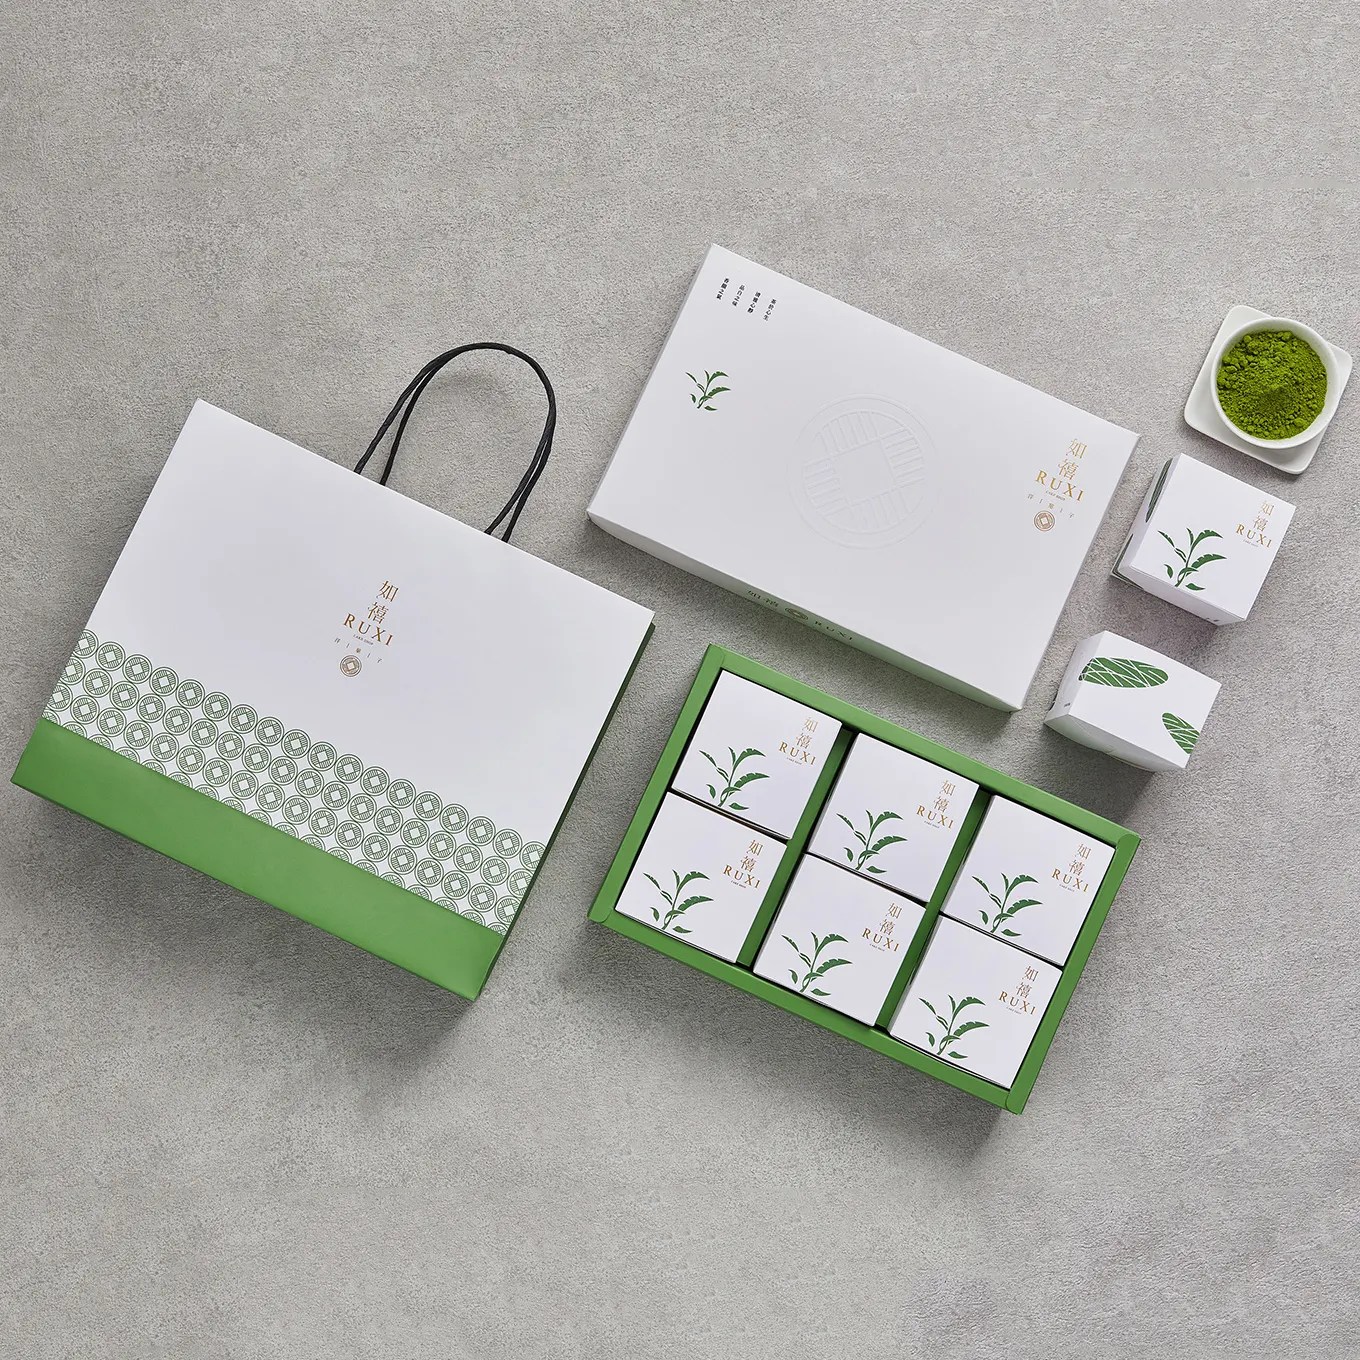 Luxus hand gefertigte Pappe benutzer definierte Verpackung Lieferant gedruckt mattes Papier Kaffee Macha Tee Geschenk box Set starre Boxen